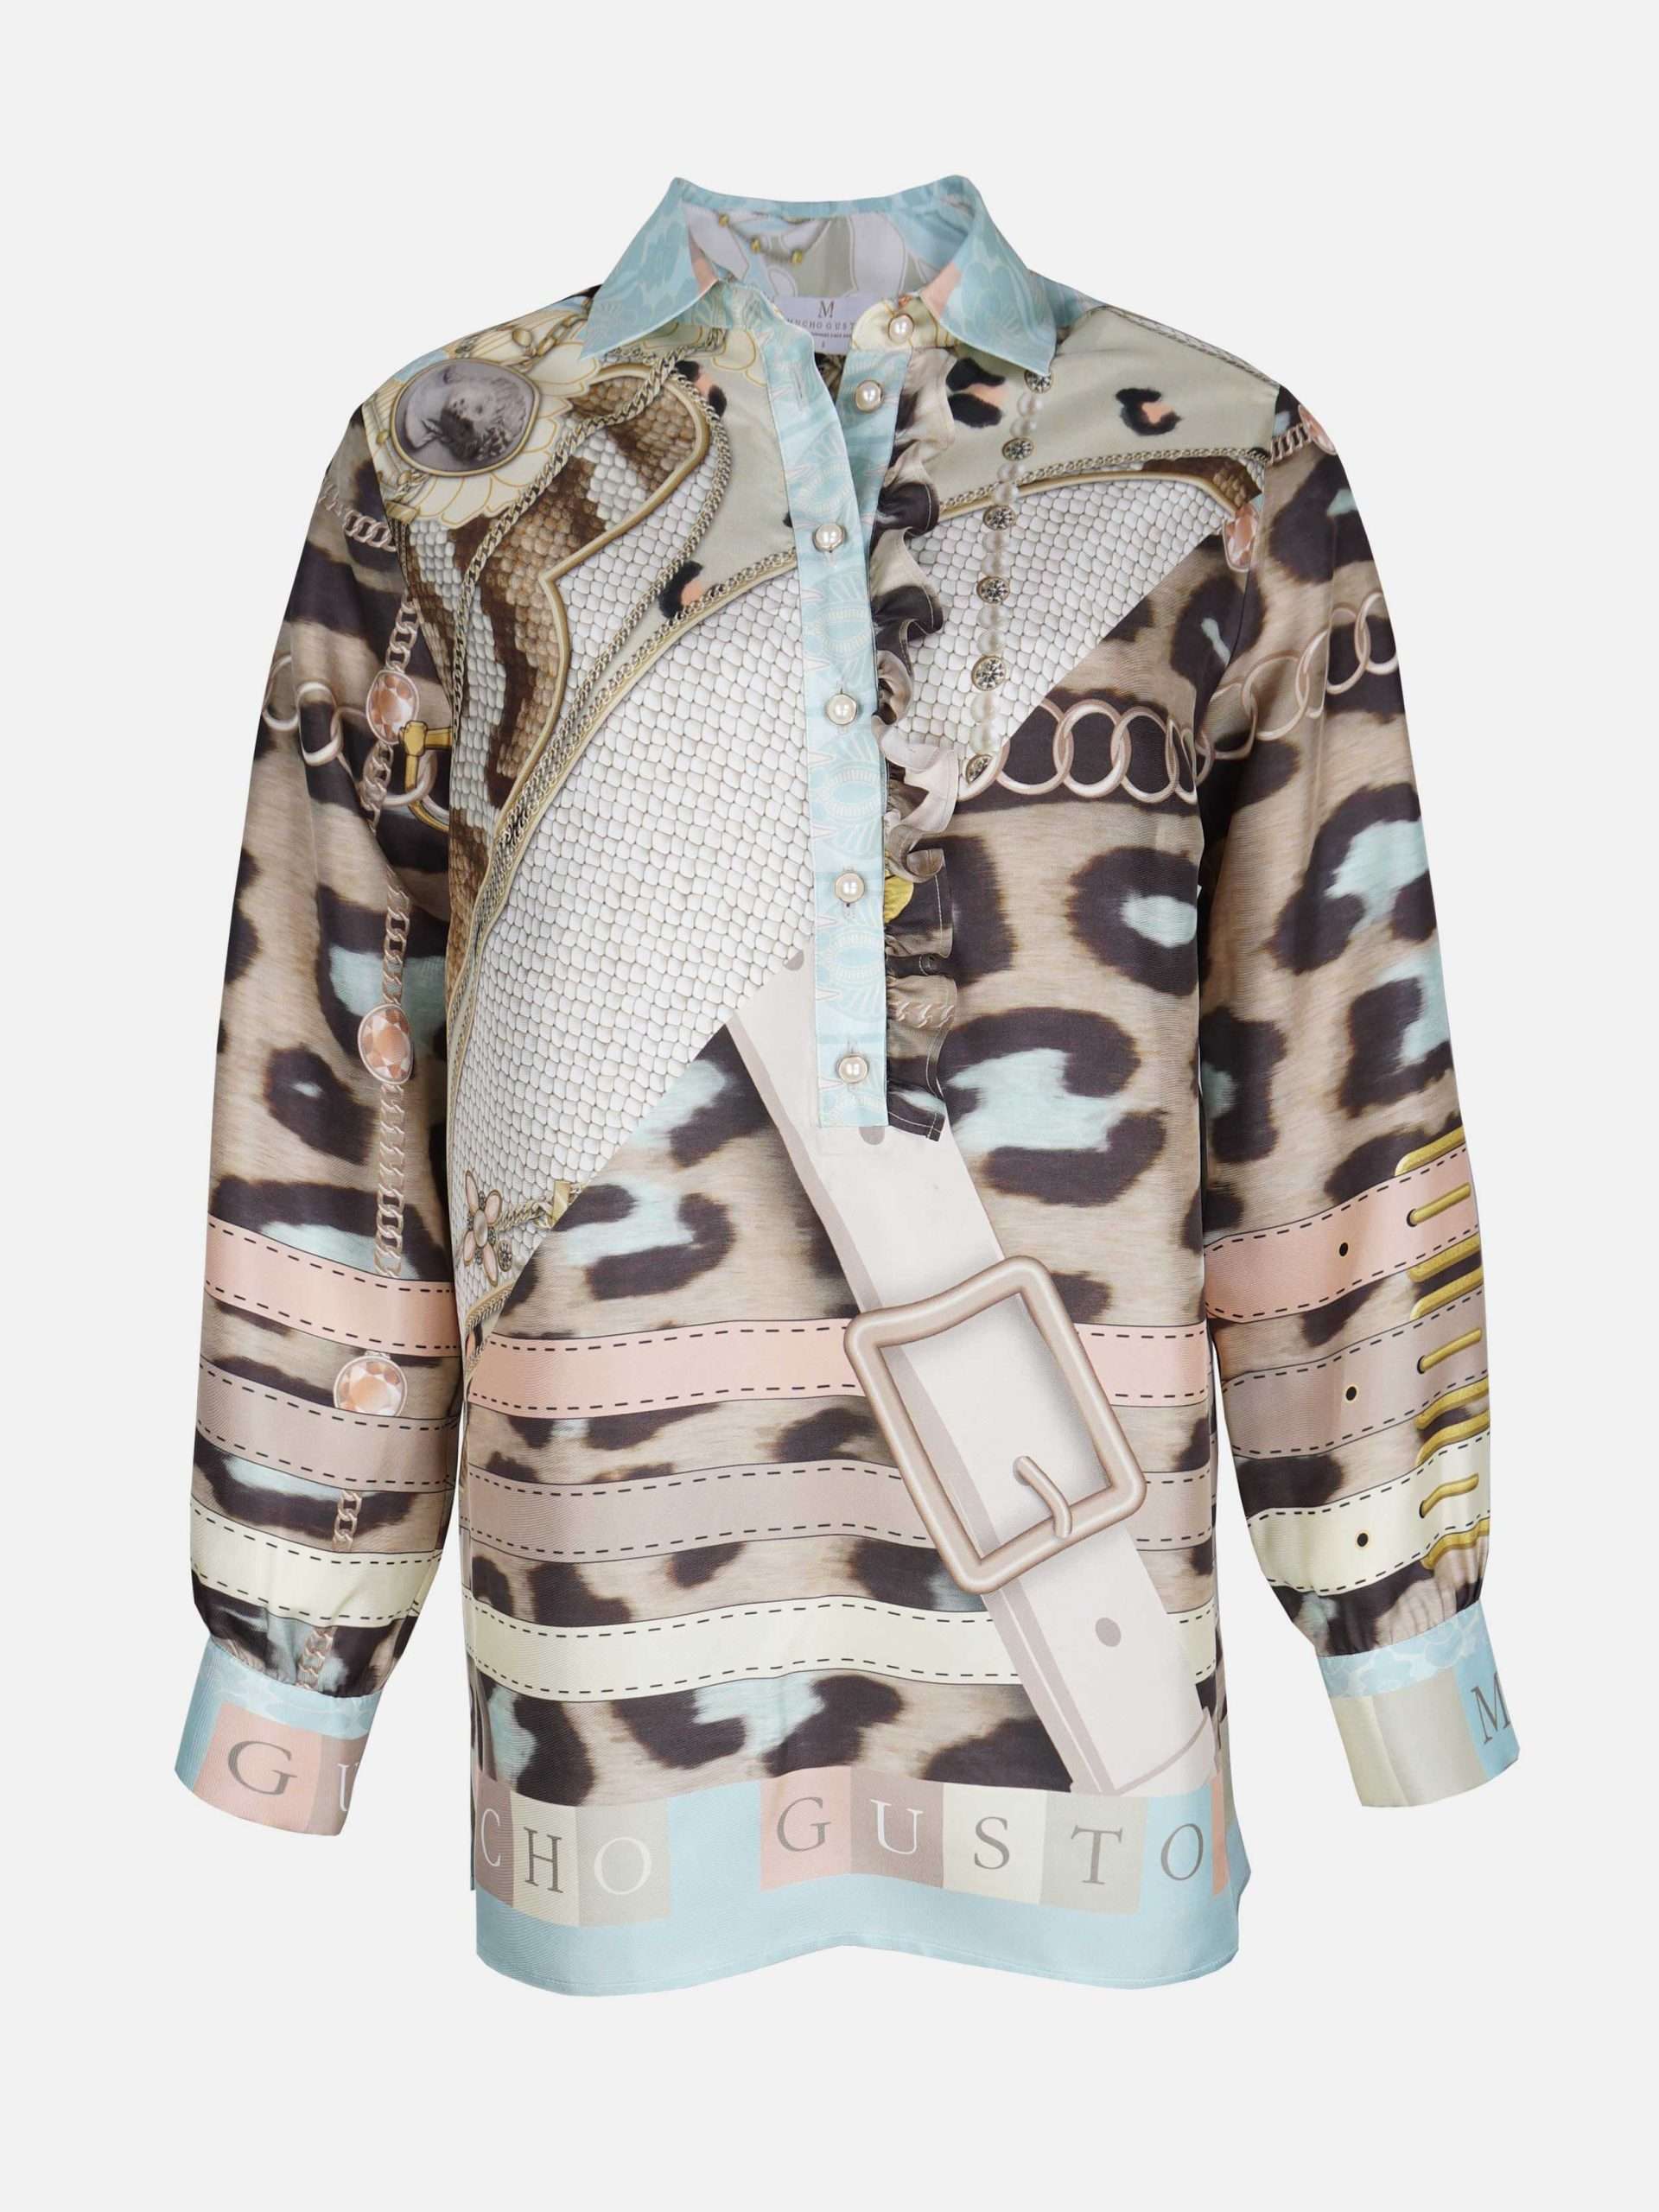 Afbeelding van Mucho Gusto Zijden blouse st. moritz luipaardprint met riemen en kettingen